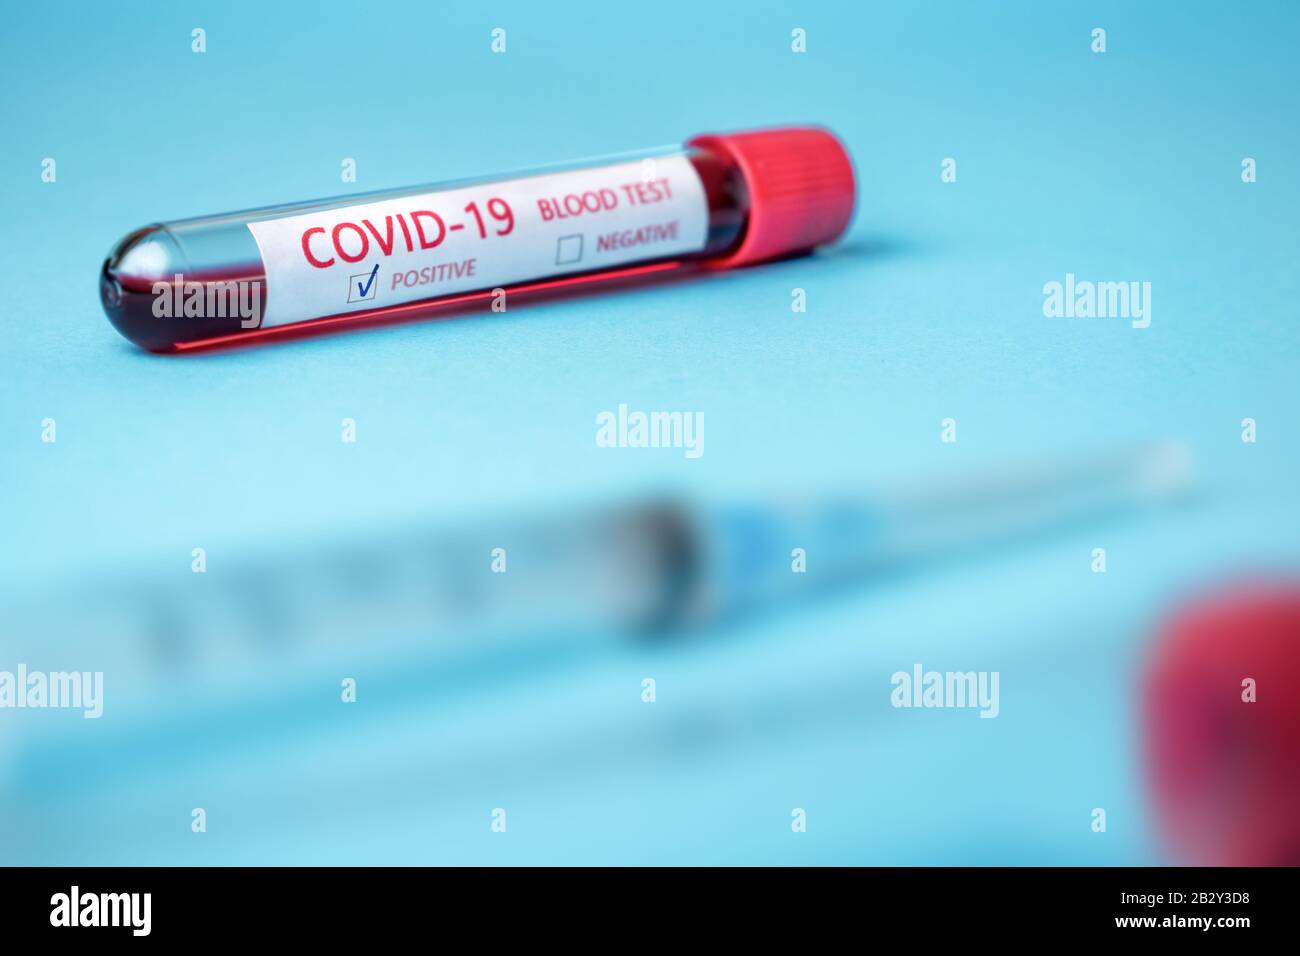 Tube à essai avec échantillon sanguin pour l'essai COVID-19, nouveau coronavirus 2019 trouvé à Wuhan, Chine. Maladie du coronavirus : COVID-19. Fond bleu Banque D'Images